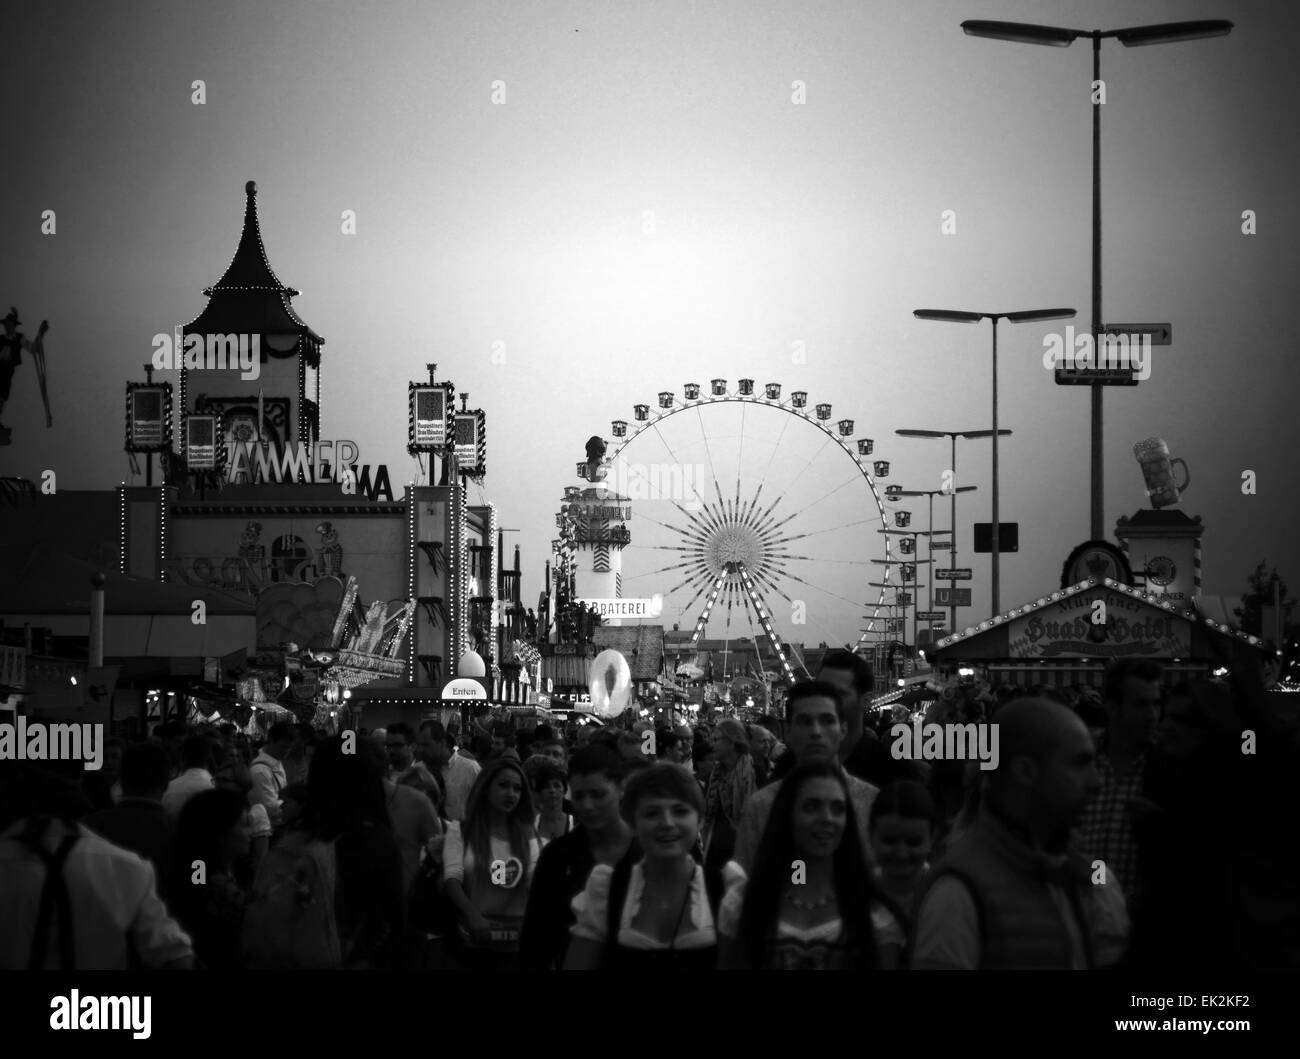 Germania Monaco di Baviera - Festa della birra Oktoberfest Oktoberfest Fiera 2014 Folla di visitatori a piedi contro la grande ruota panoramica Ferris Foto Stock